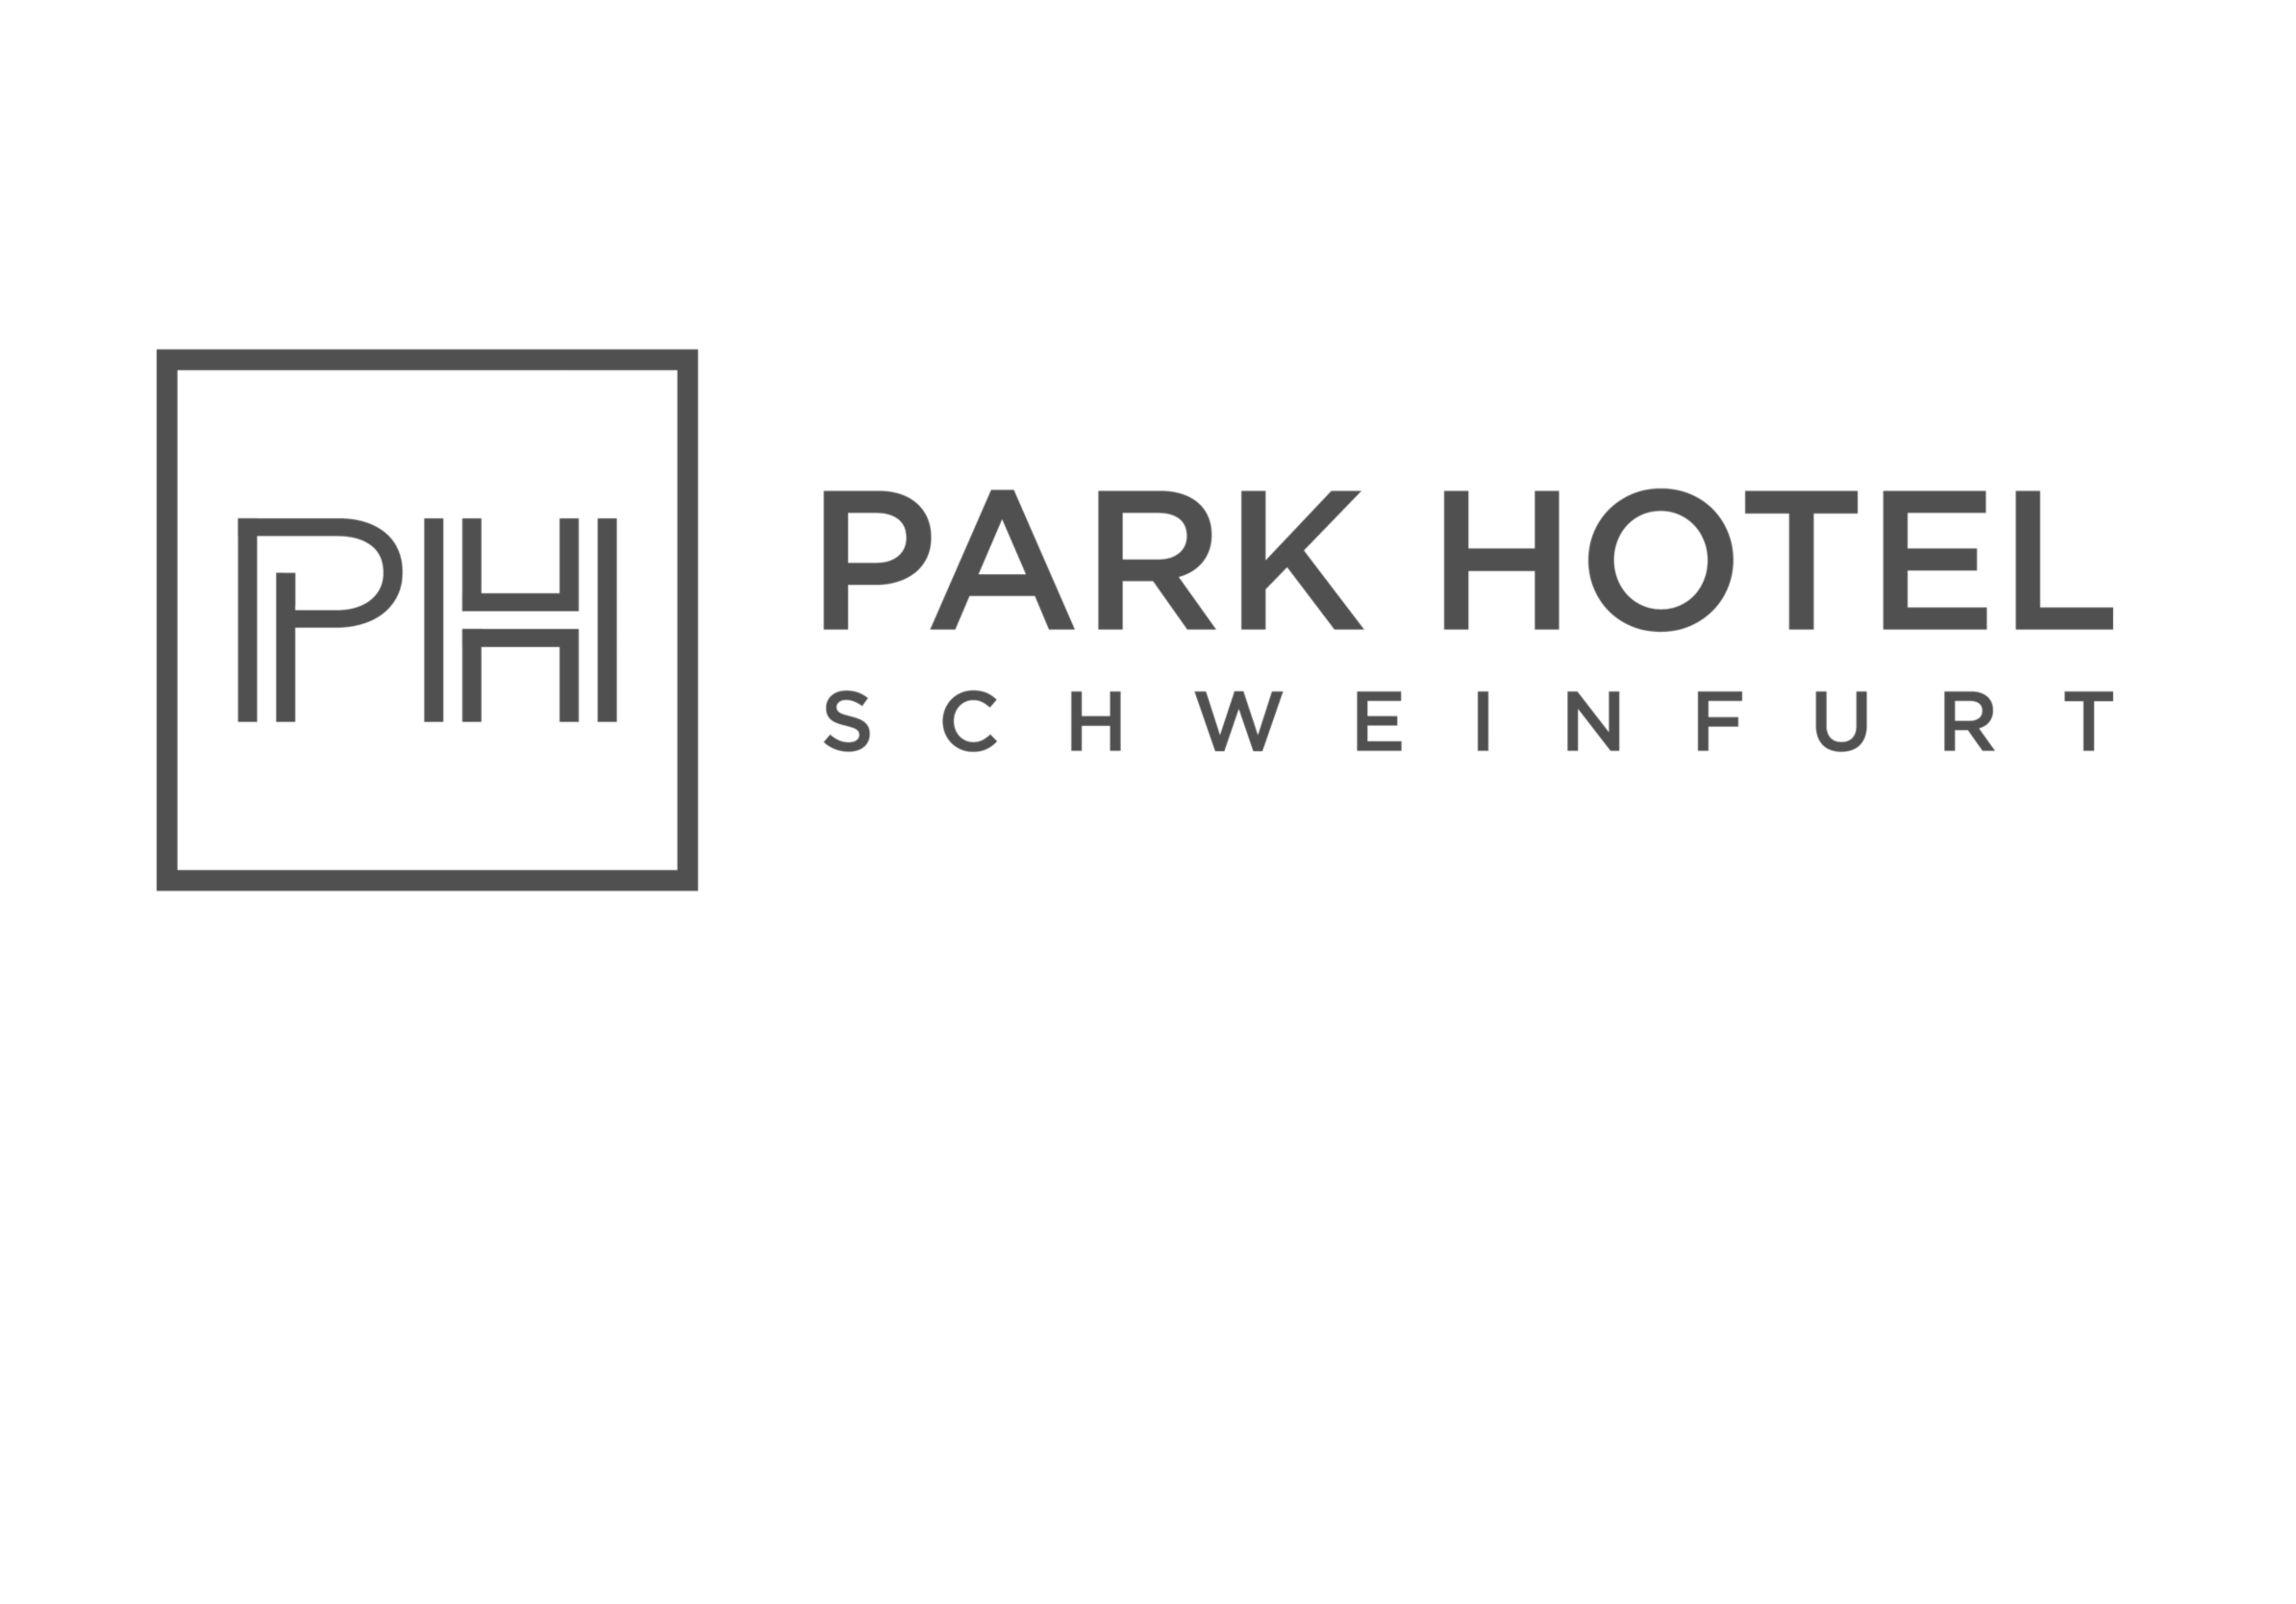 Park Hotel Schweinfurt